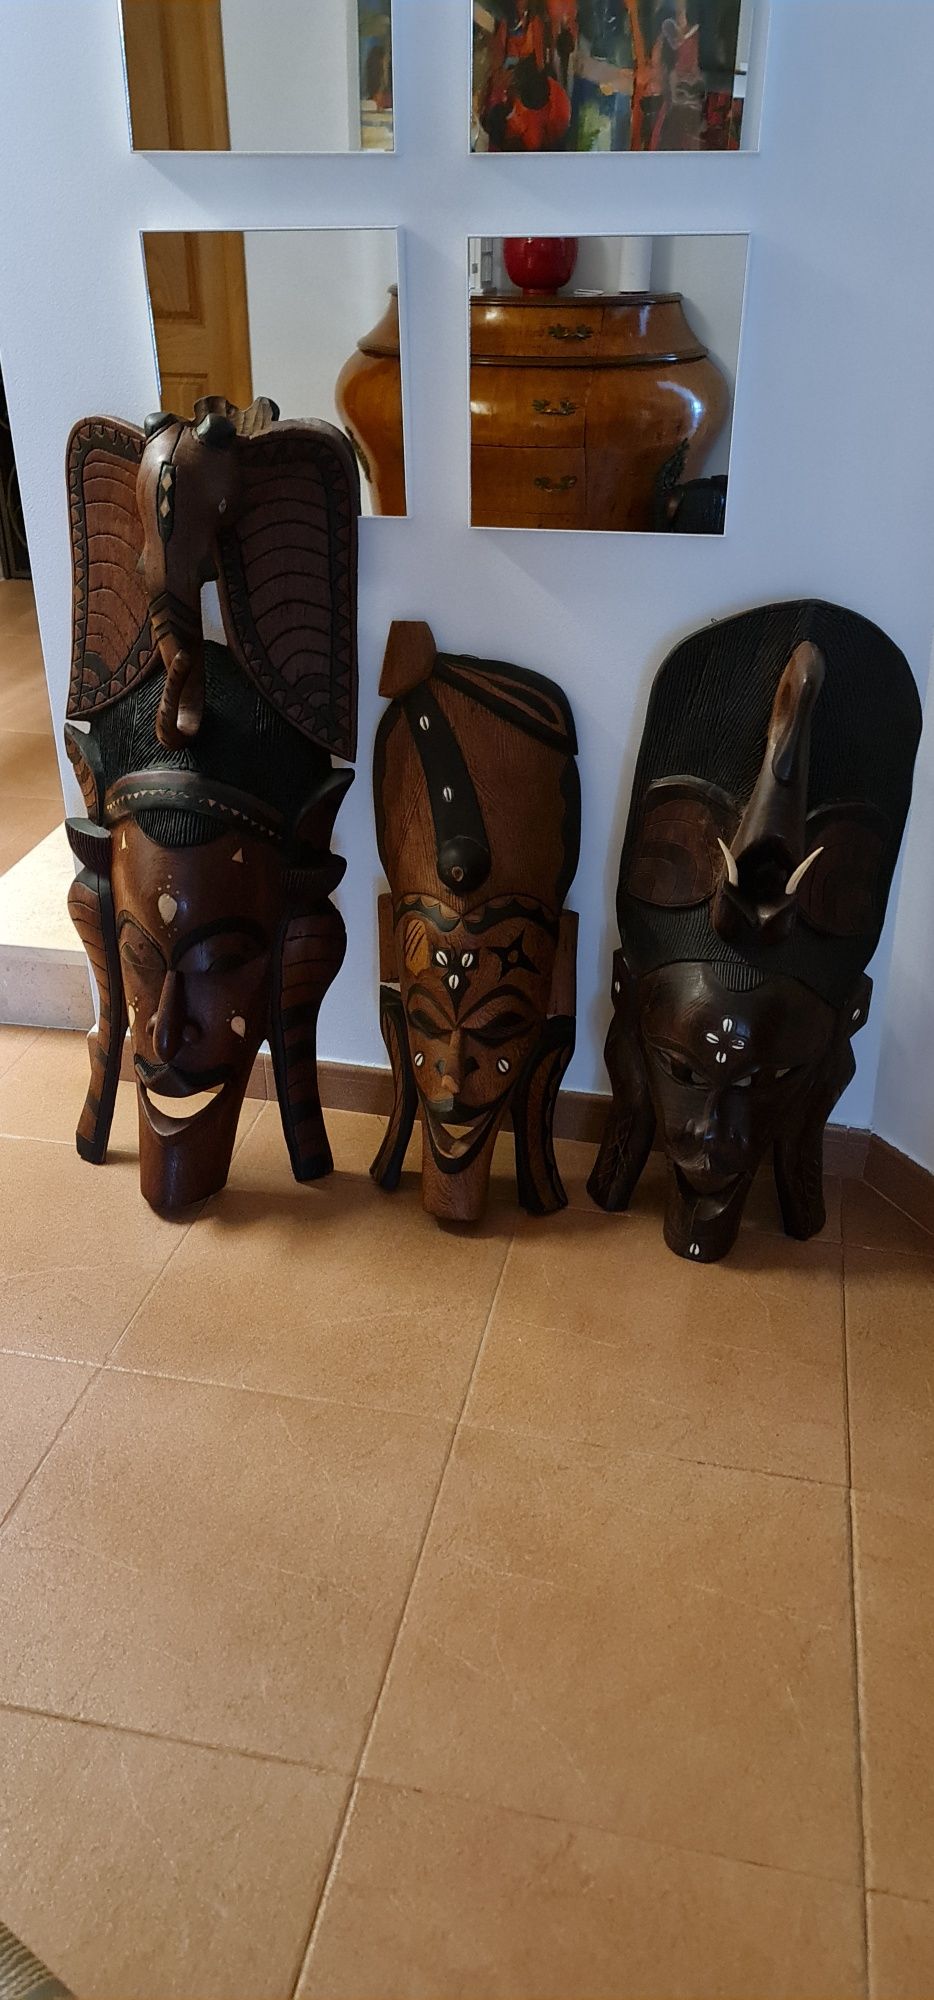 Arte africana colecção particular